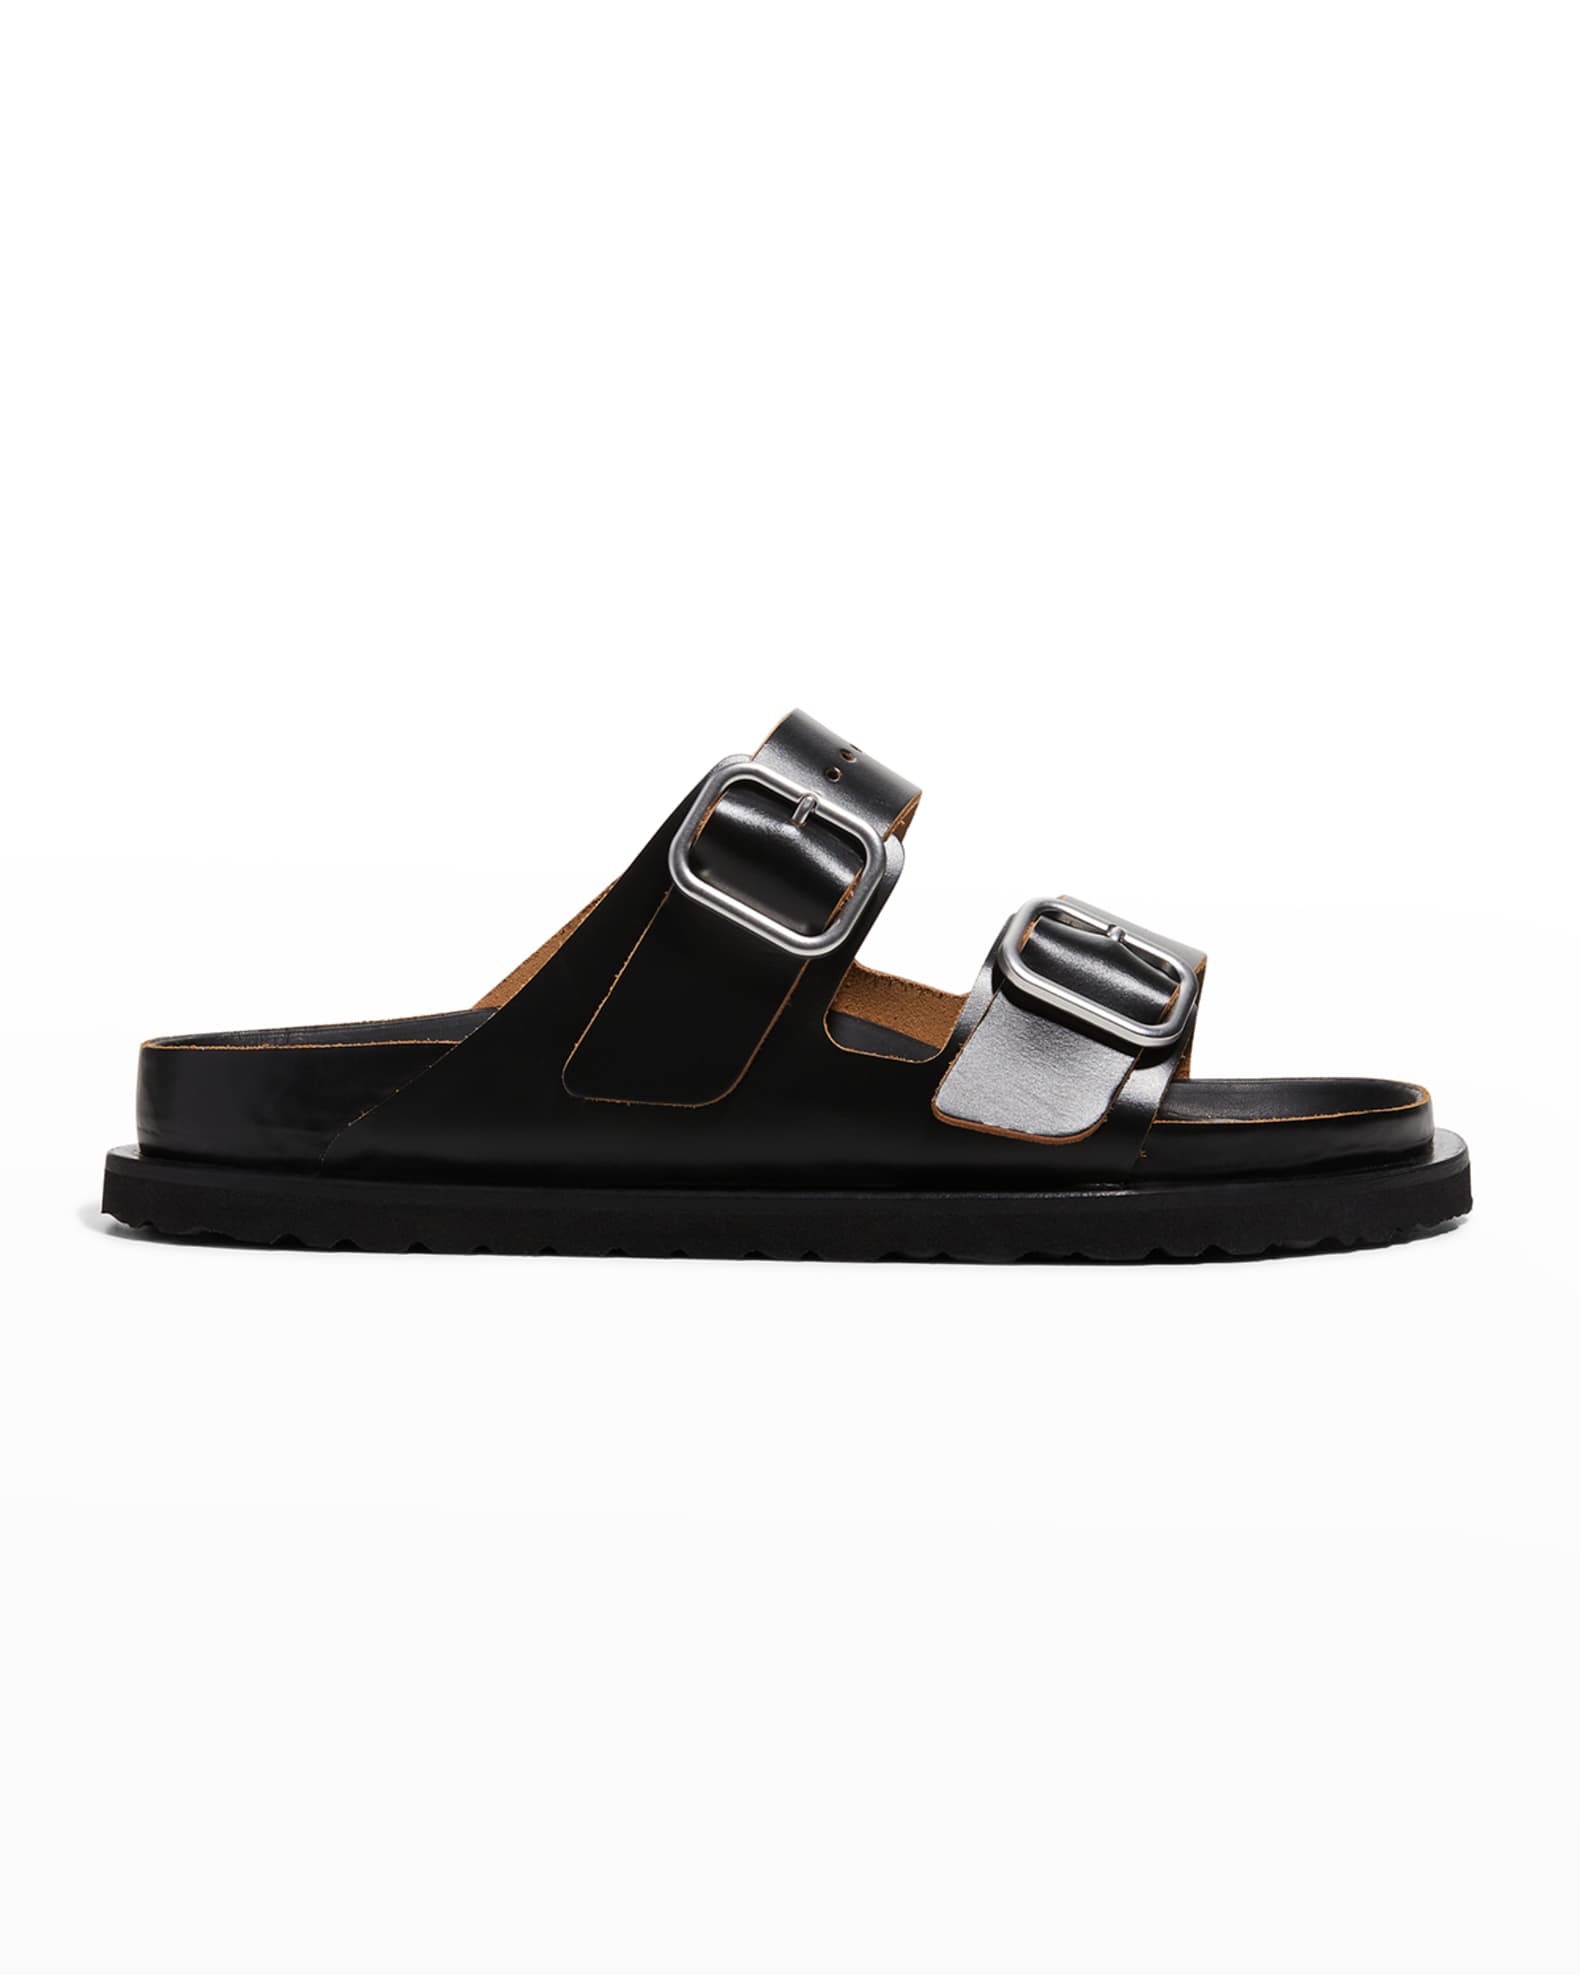 Jil Sander x Birkenstock Arizona Dual-Buckle Slide Sandals | Neiman Marcus